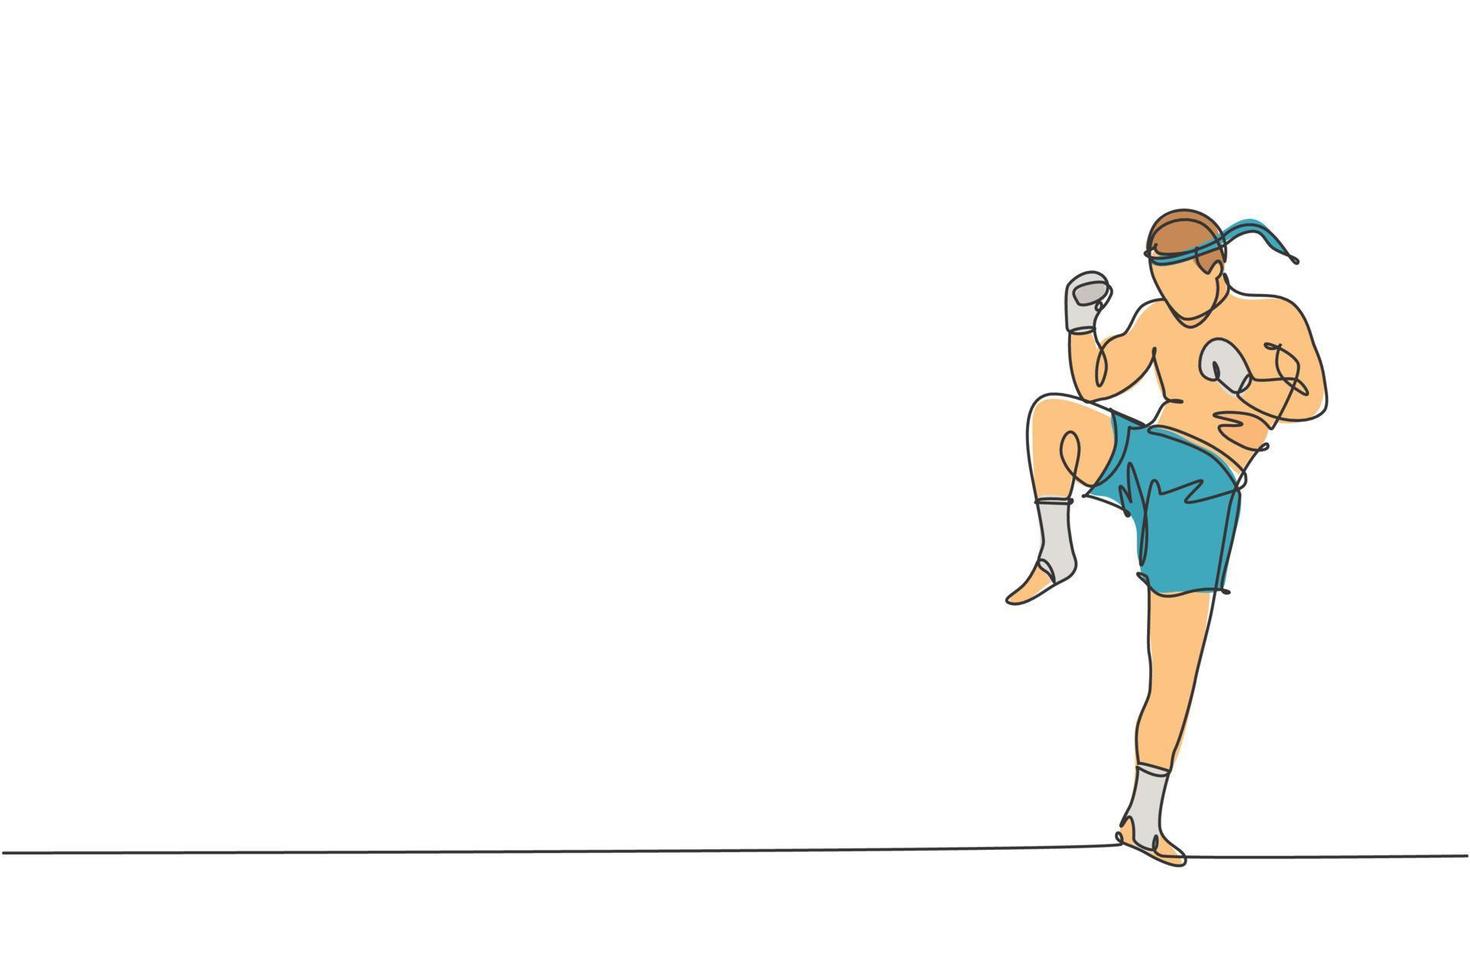 un disegno a linea singola di un giovane combattente energico muay thai che si esercita in palestra centro fitness illustrazione vettoriale grafica. concetto di sport di boxe tailandese combattivo. moderno disegno a linea continua